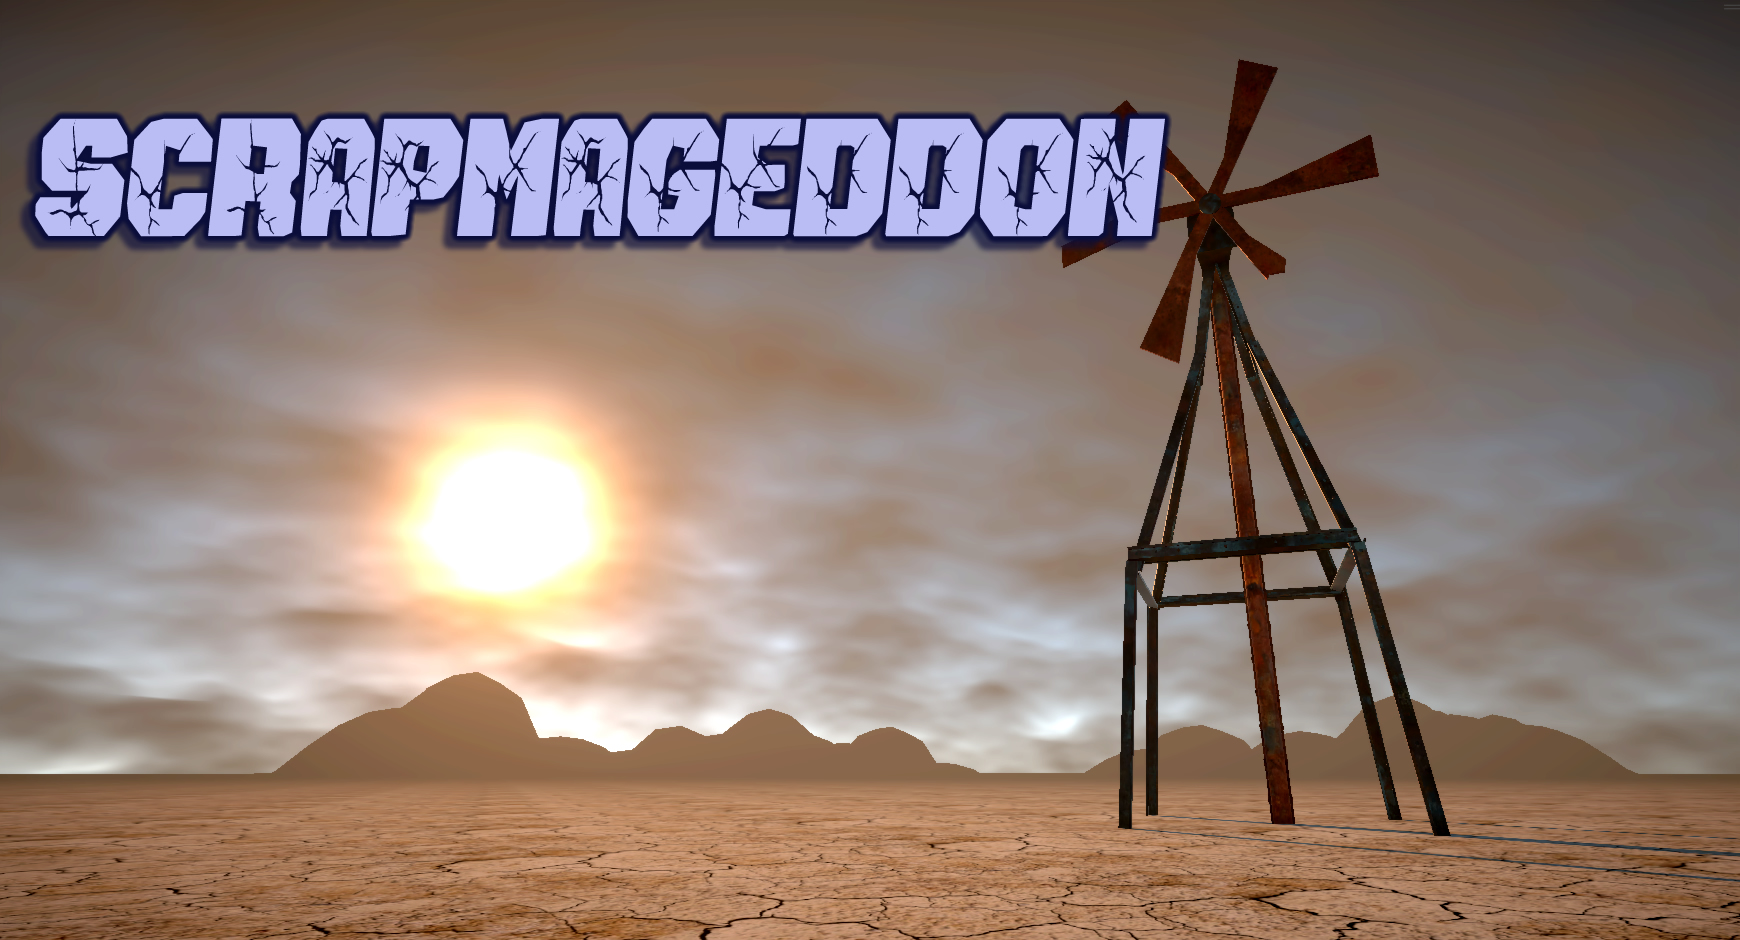 Scrapmageddon [W.I.P.]